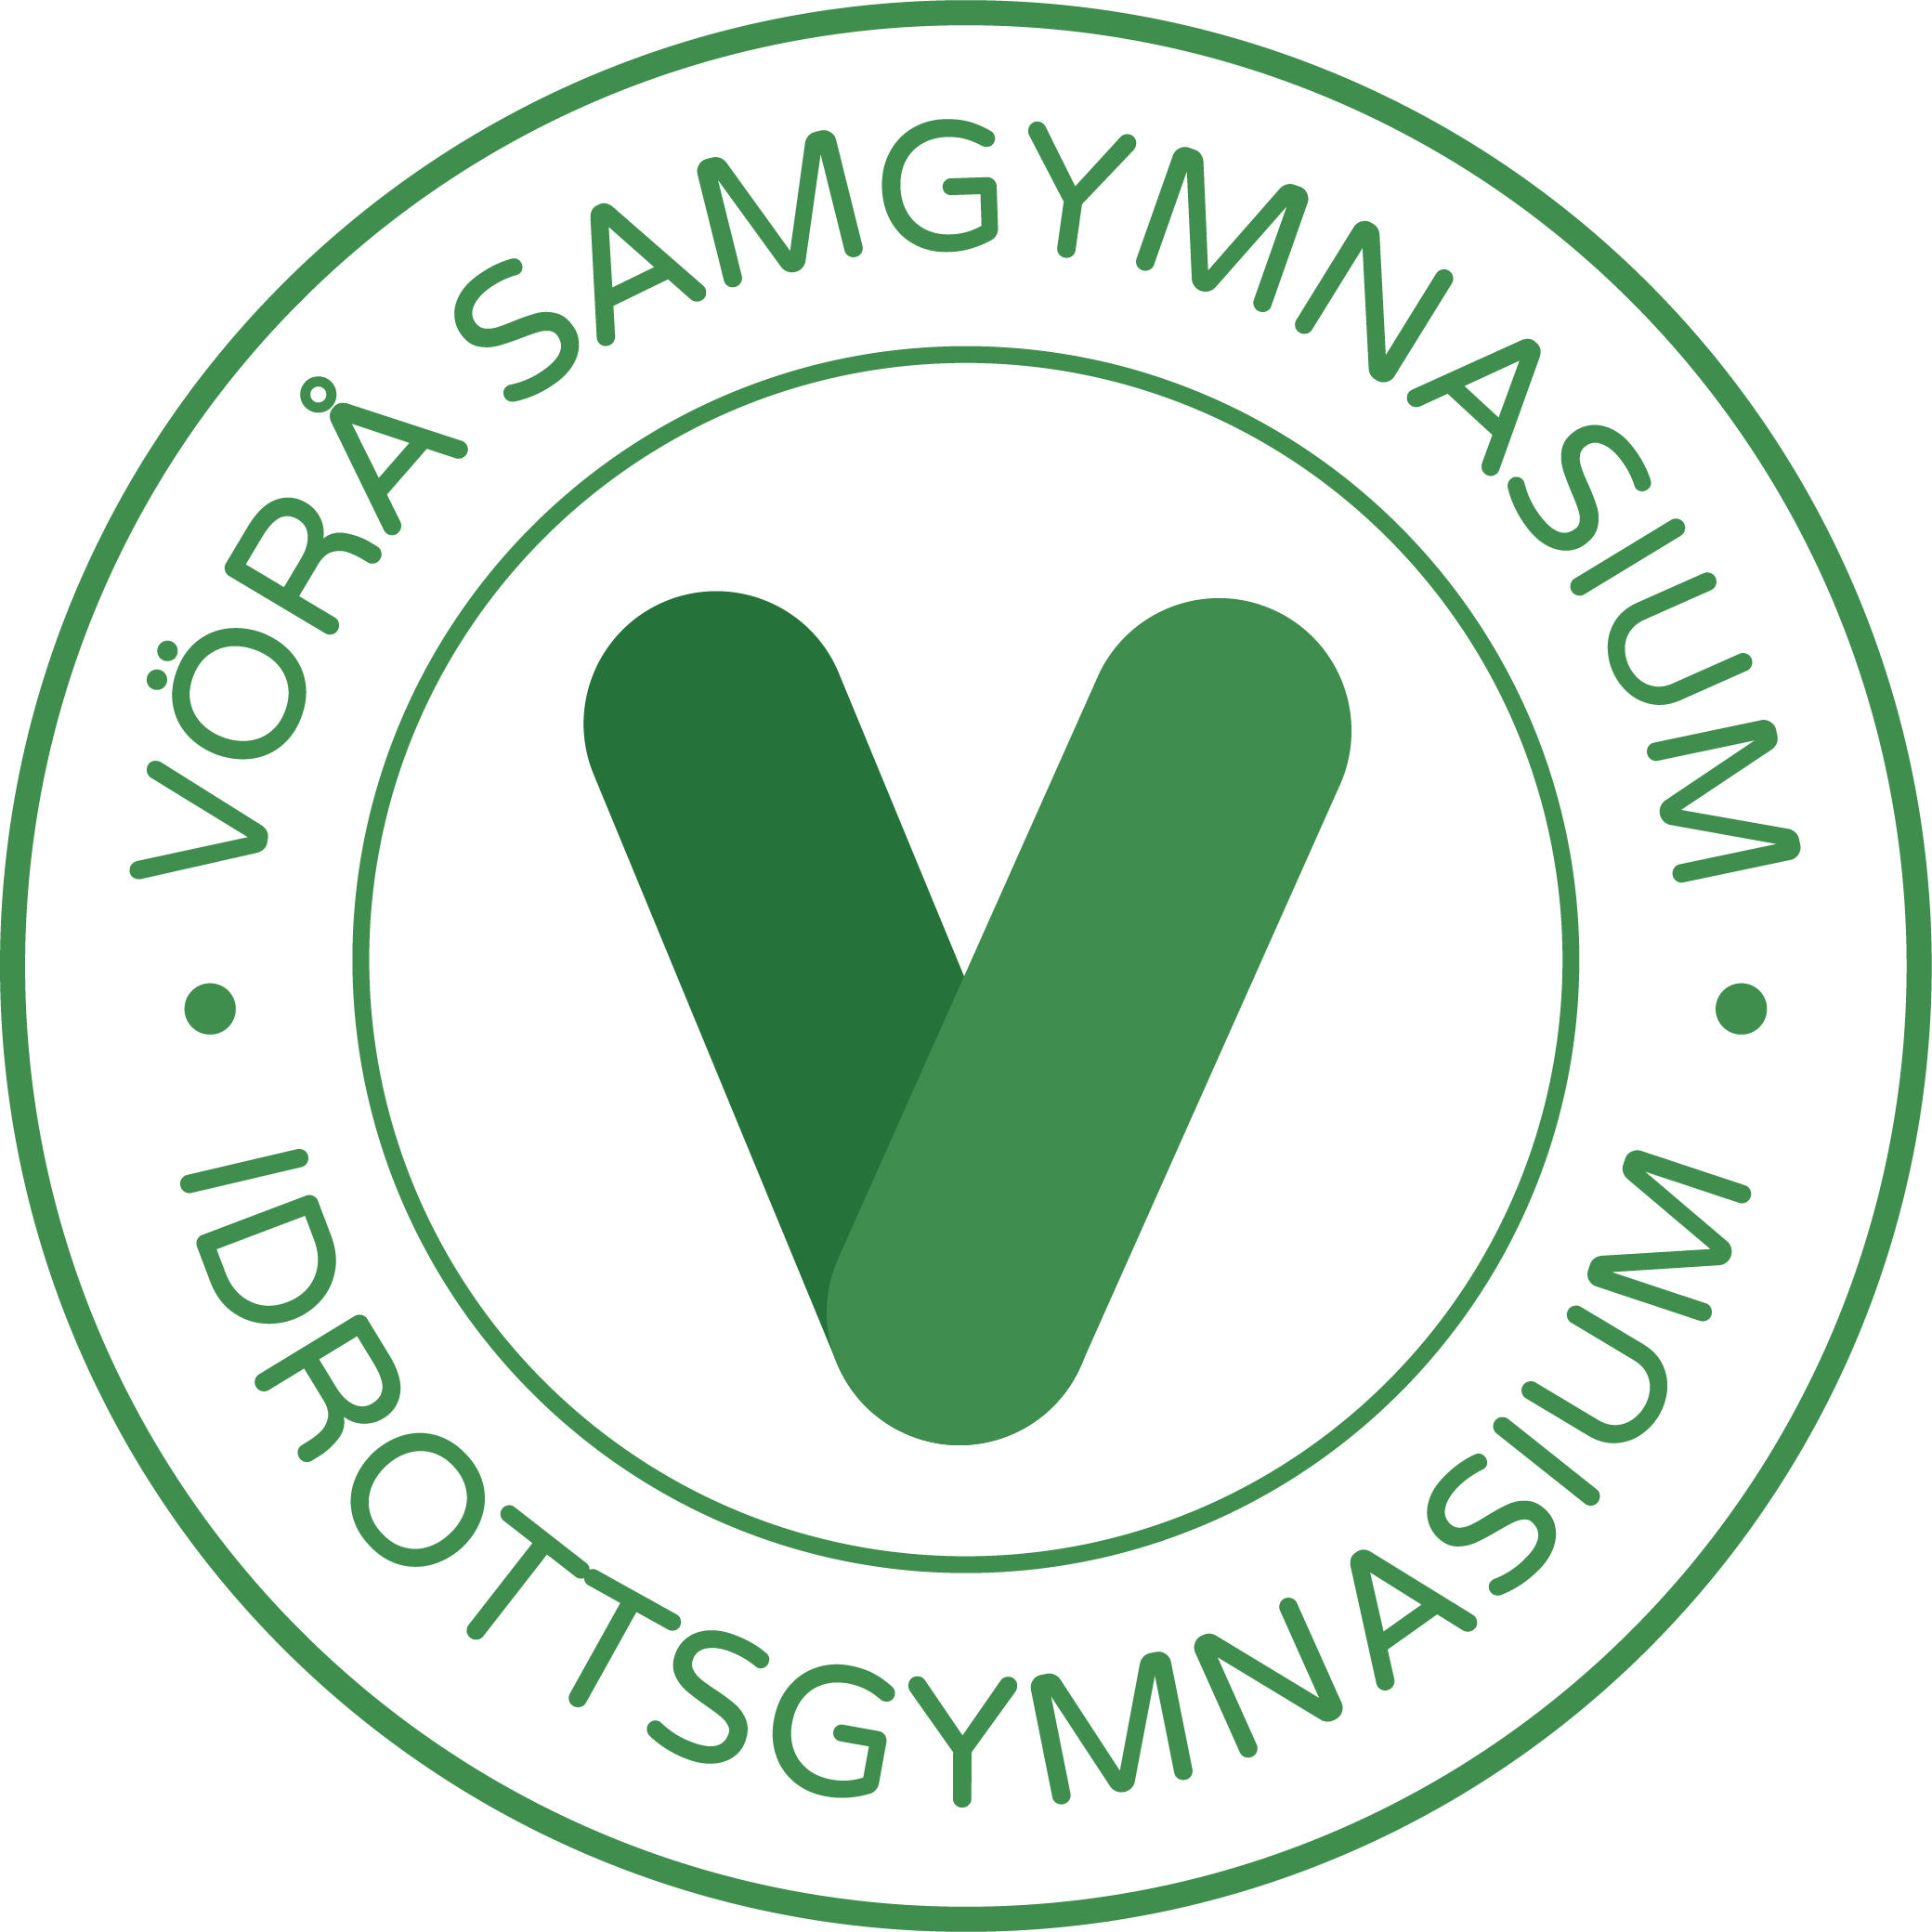 Vörå Samgymnasium - Idrottsgymnasium logo